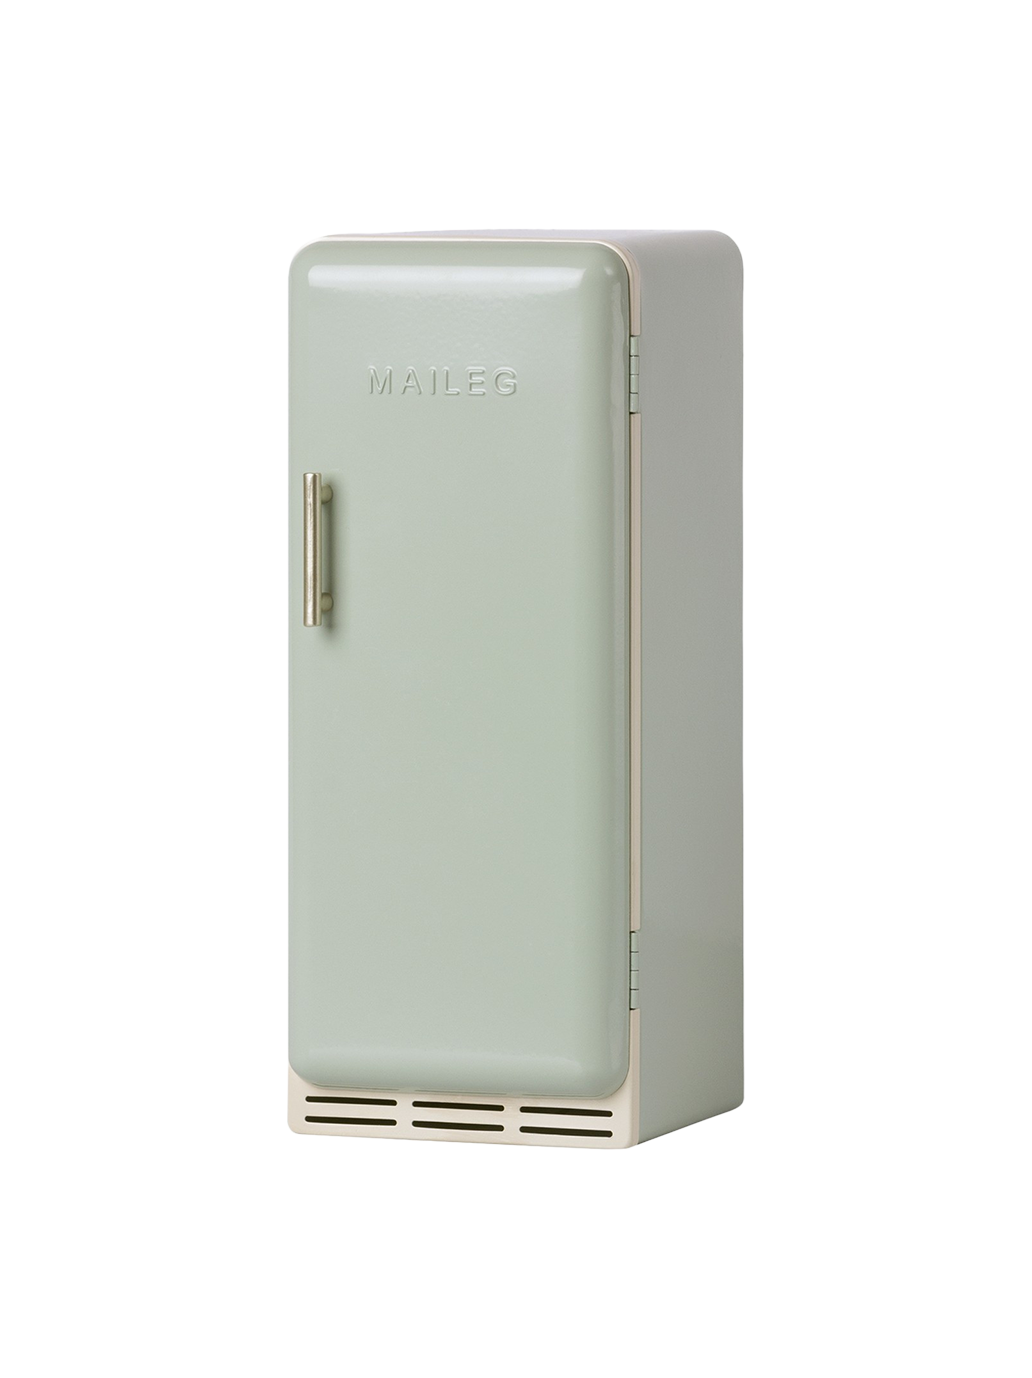 réfrigérateur miniature en métal